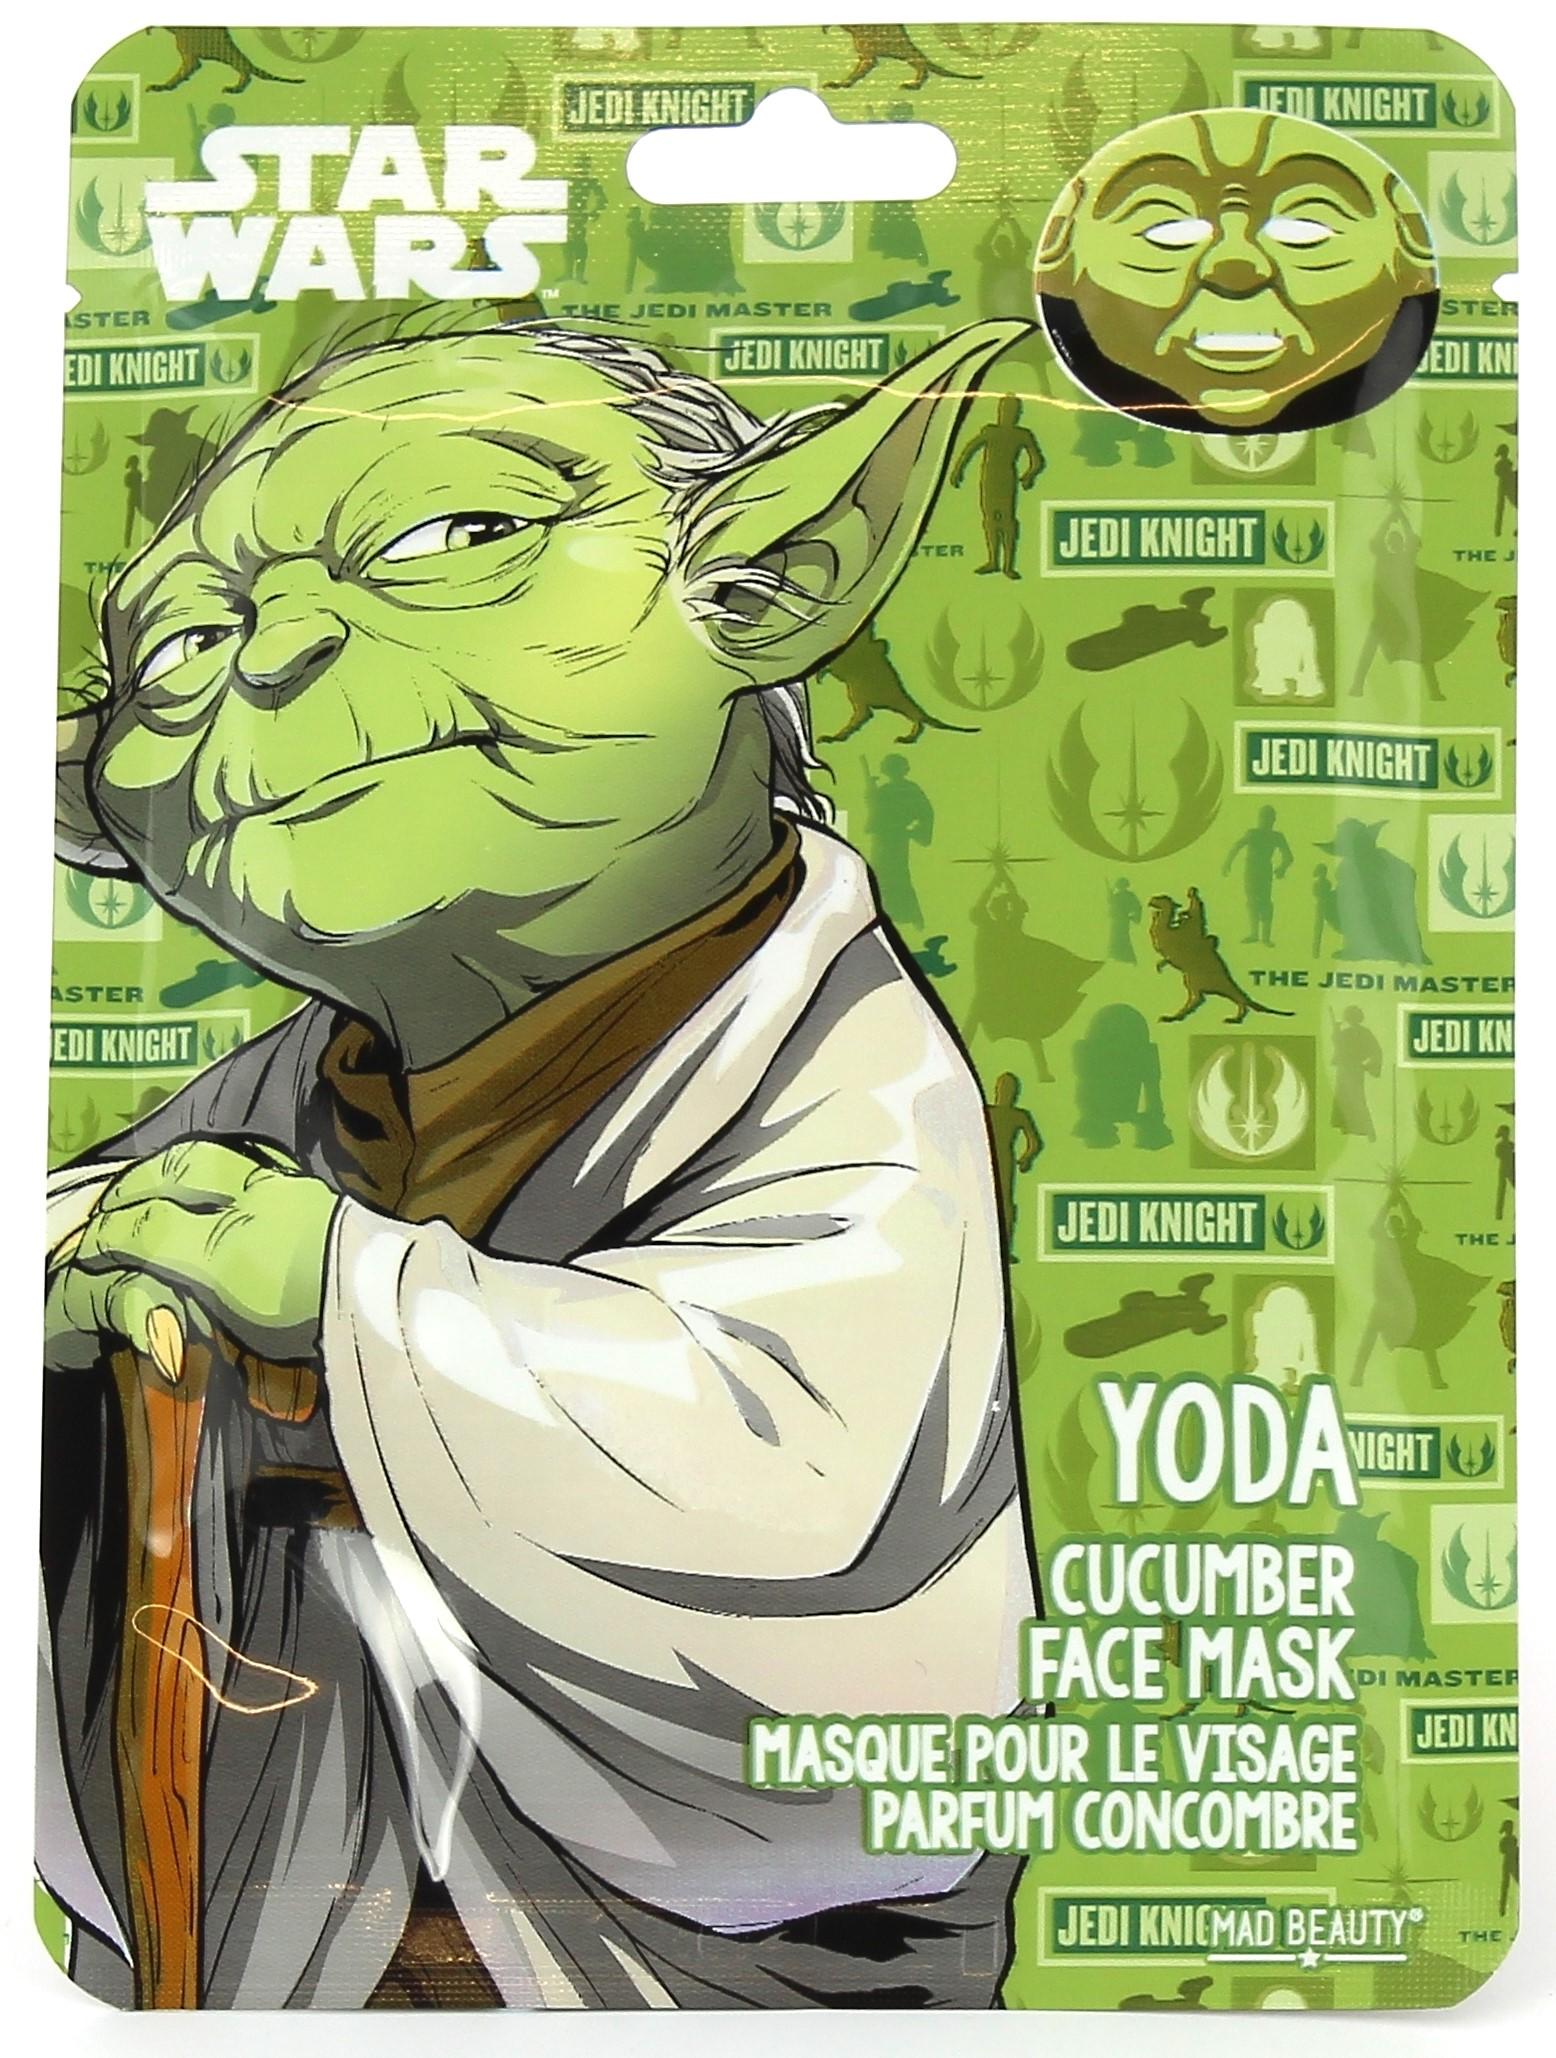 Yoda Cucumber Face Mask